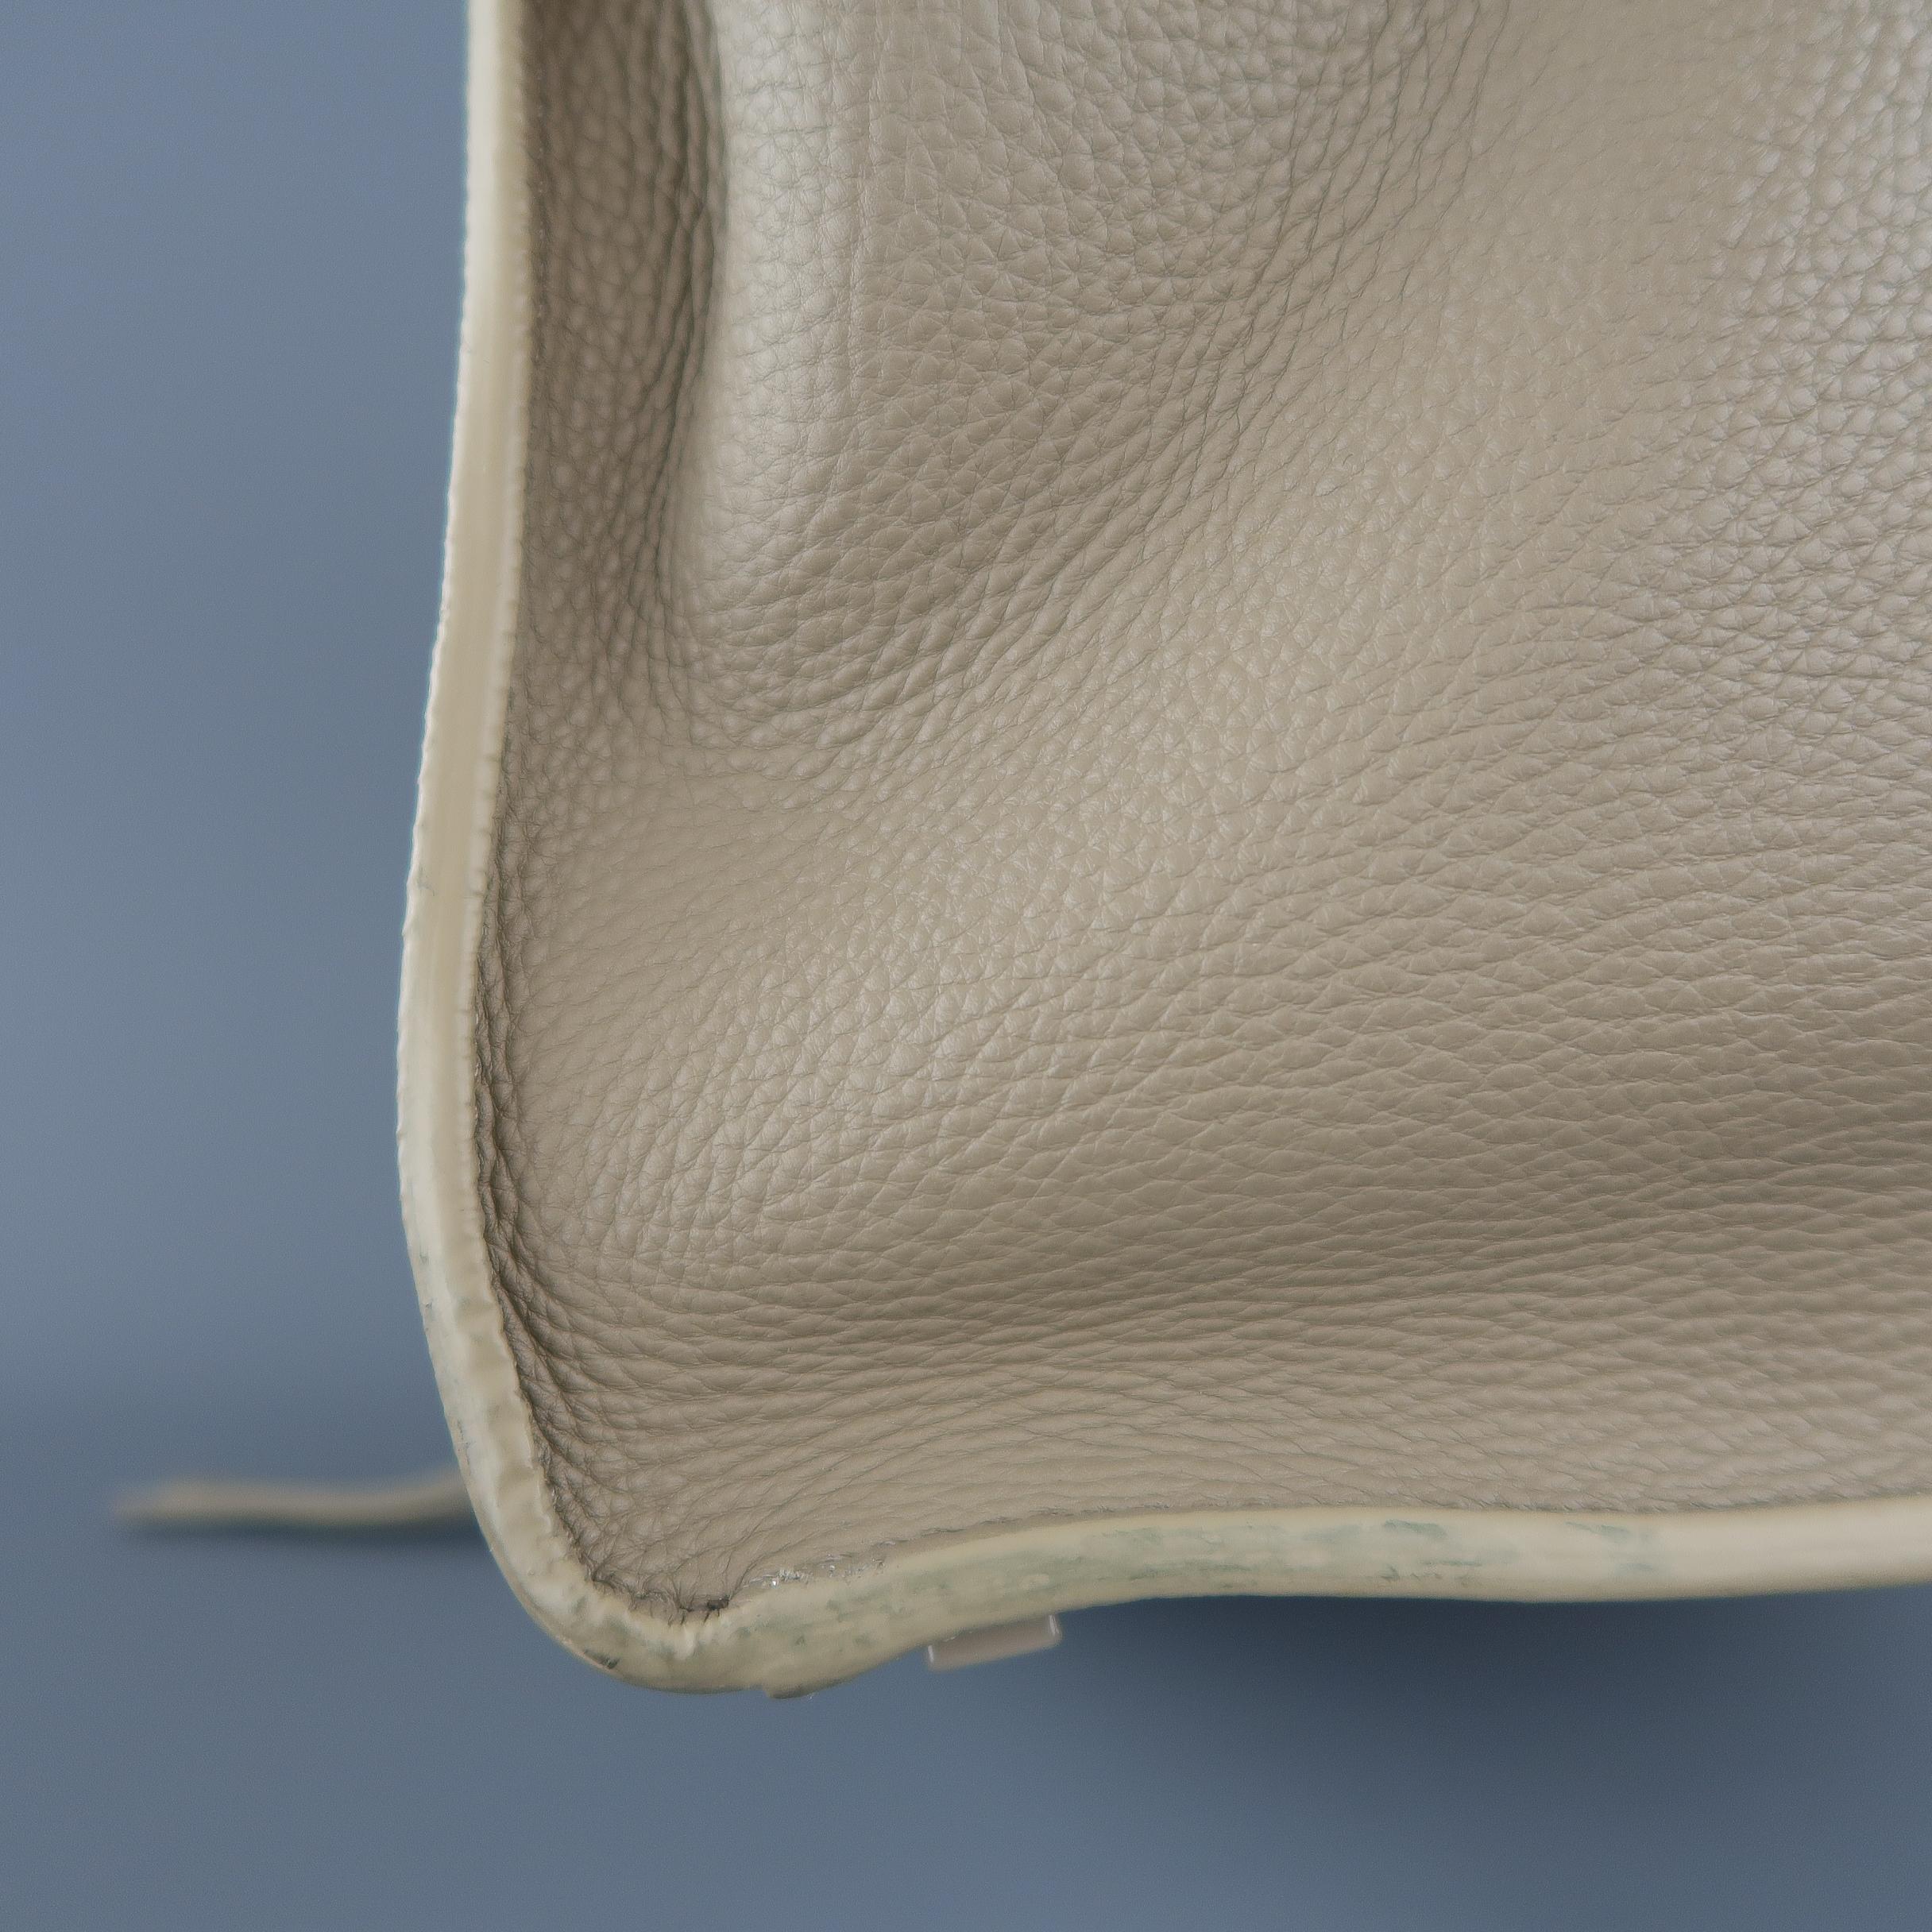 CELINE Taupe Pebble Grain Leather PHANTOM Medium Tote Handbag  8